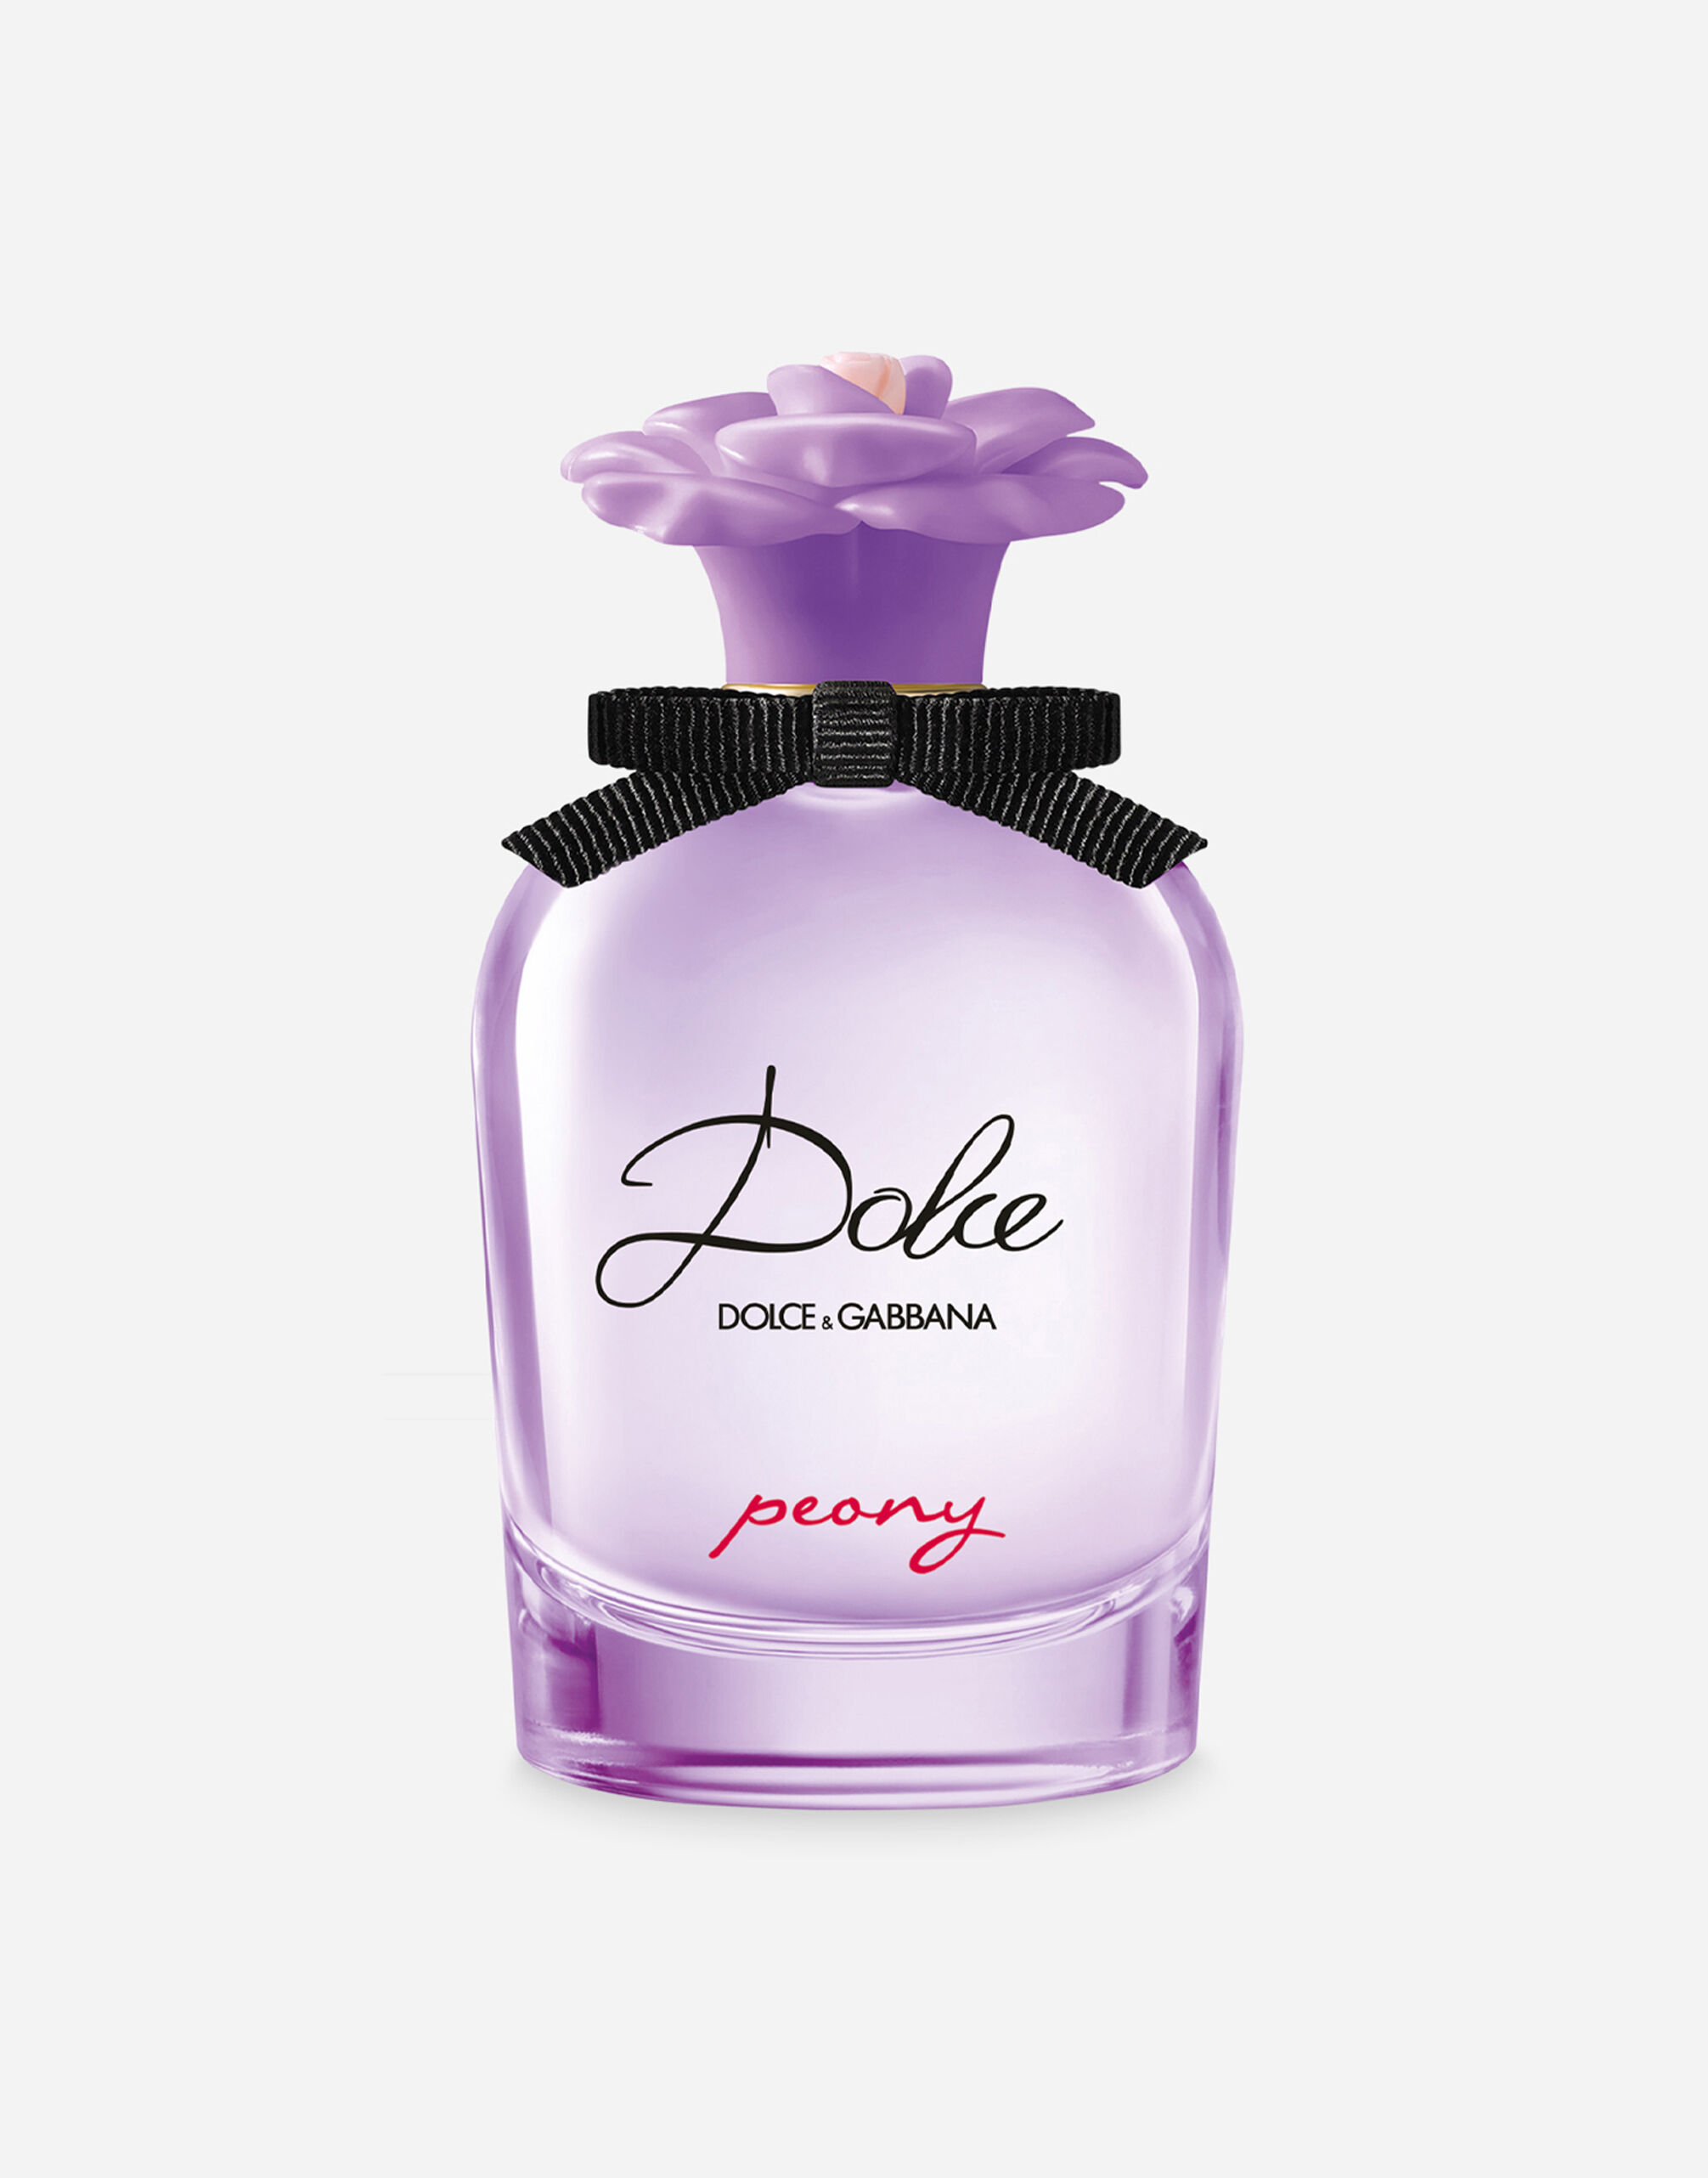 Dolce & Gabbana Dolce Peony Eau de Parfum - VT0063VT000